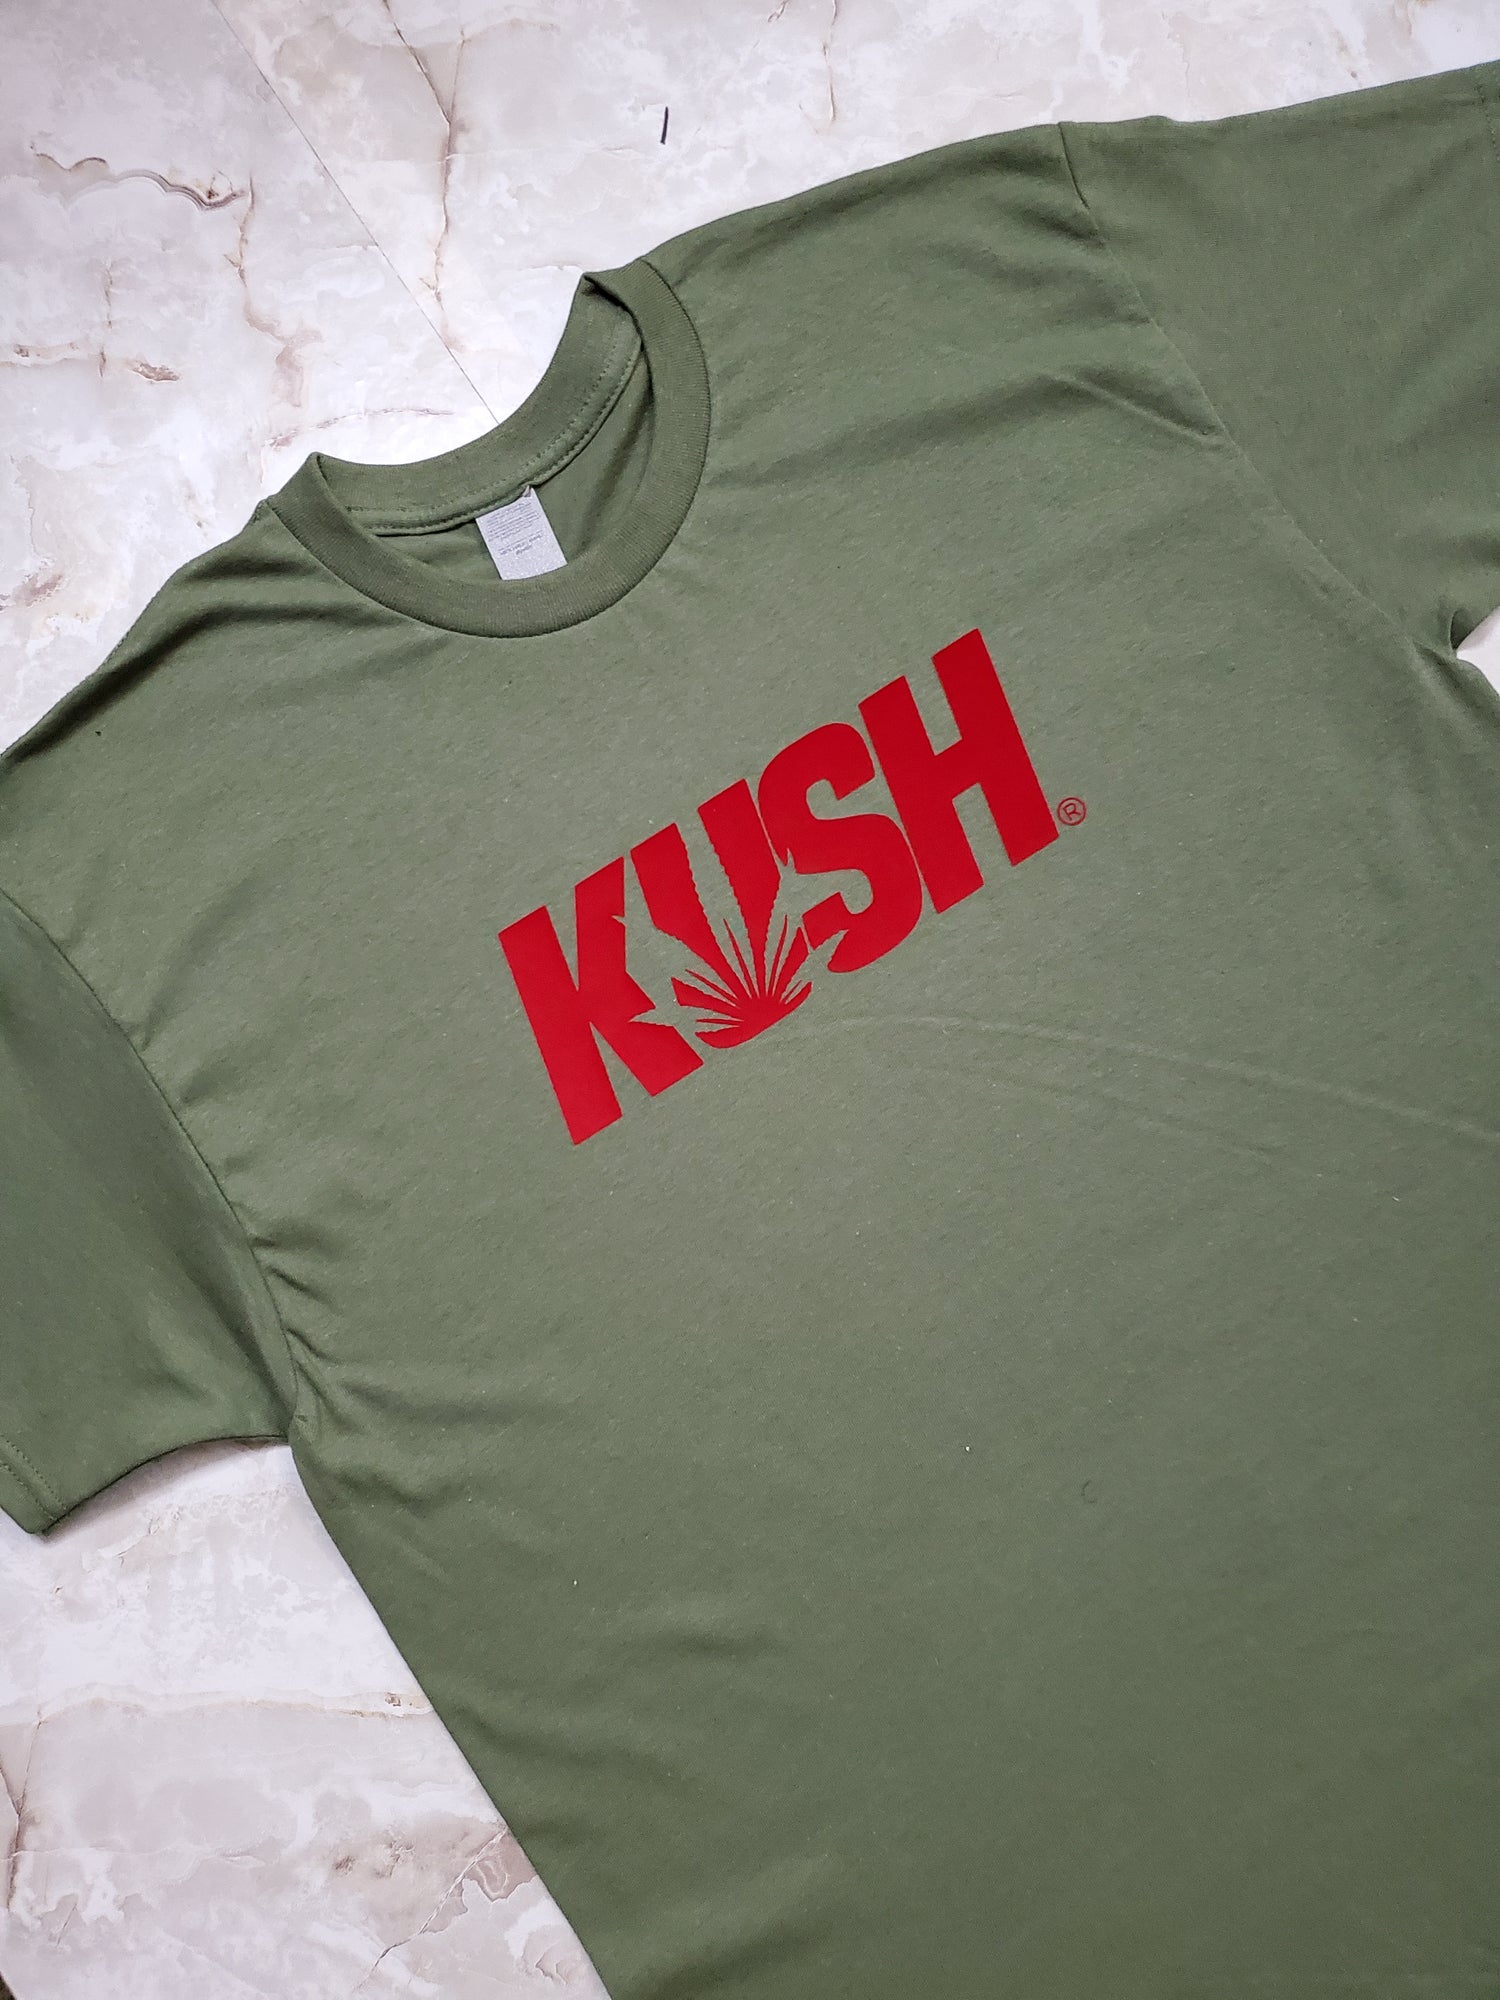 KUSH T-Shirt - Centre Ave Clothing Co.